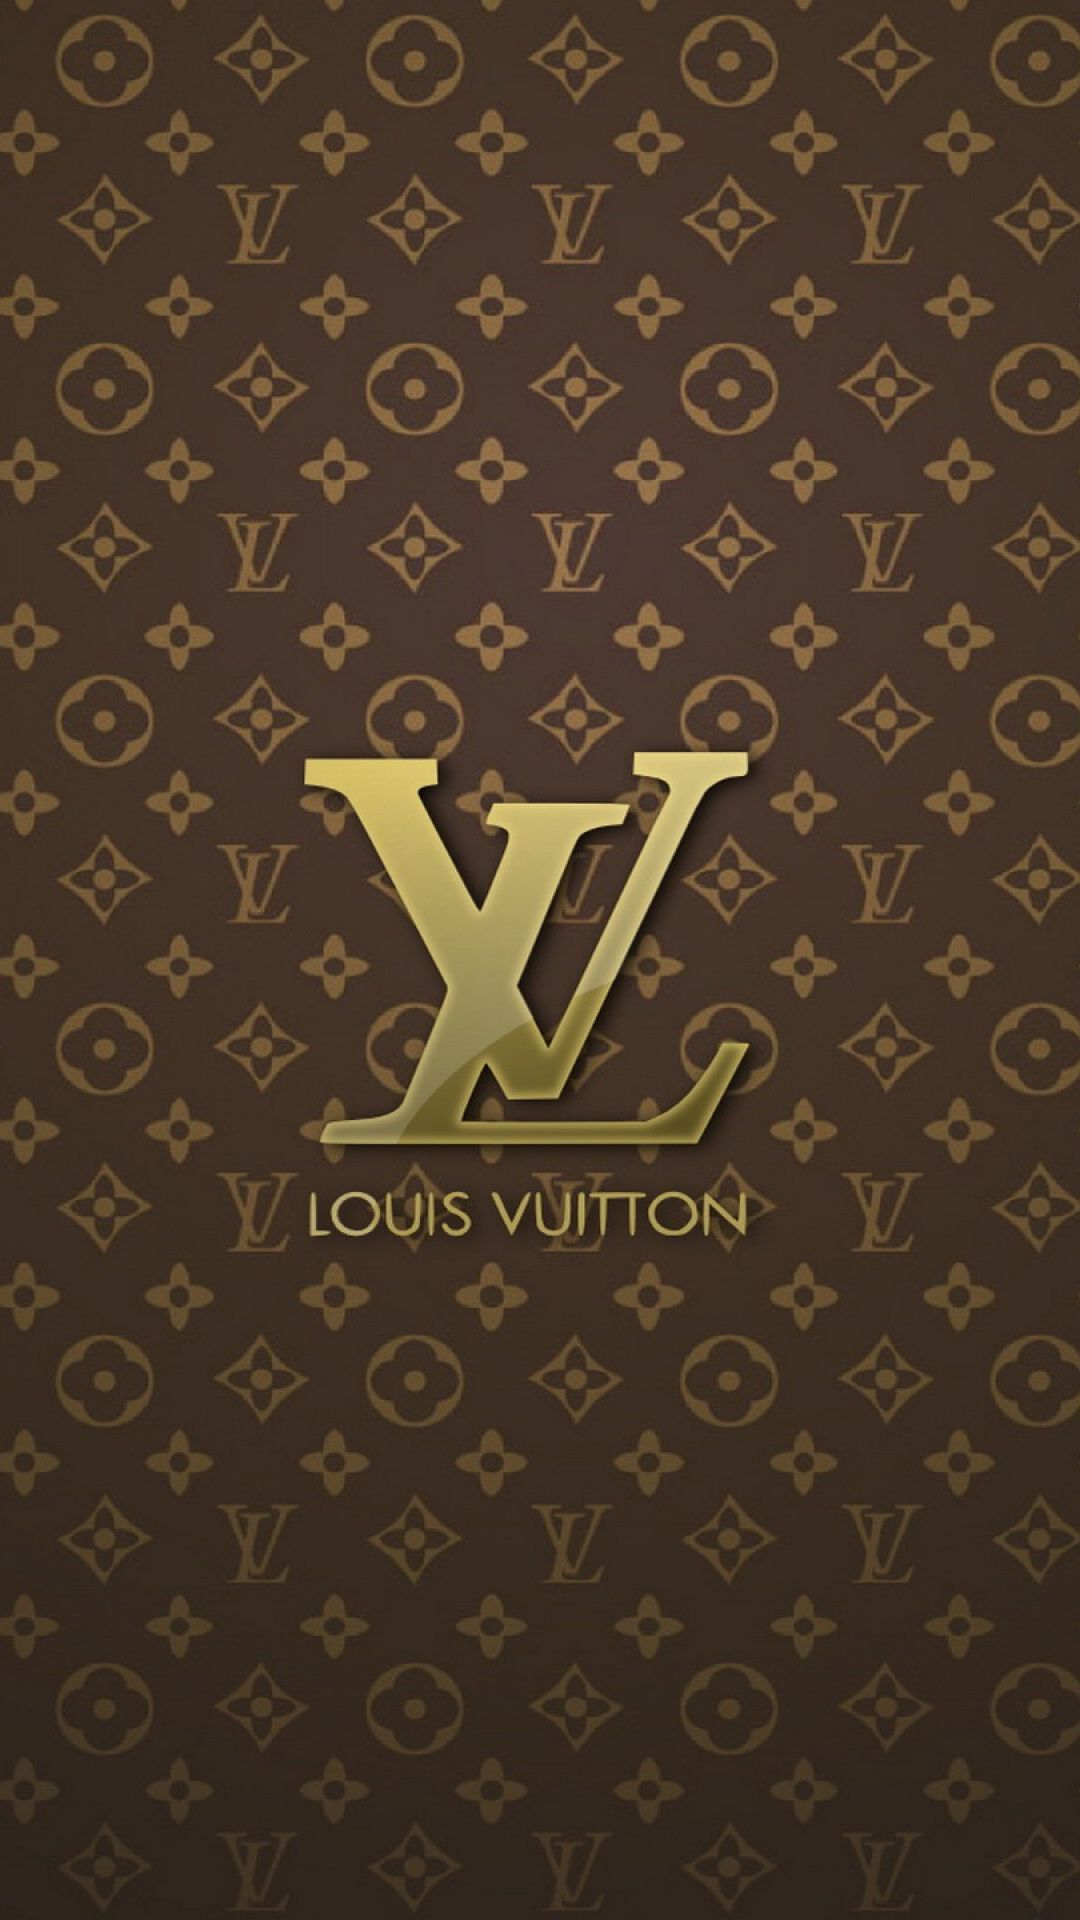 Tải xuống miễn phí hình nền iPhone Louis Vuitton - Top hình nền iPhone Louis Vuitton miễn phí nhất là dịch vụ tốt nhất dành cho những ai muốn sở hữu những hình nền iPhone đẹp từ thương hiệu Louis Vuitton. Bạn có thể tải xuống miễn phí những hình nền đẹp nhất trên trang web và sử dụng cho điện thoại của bạn.